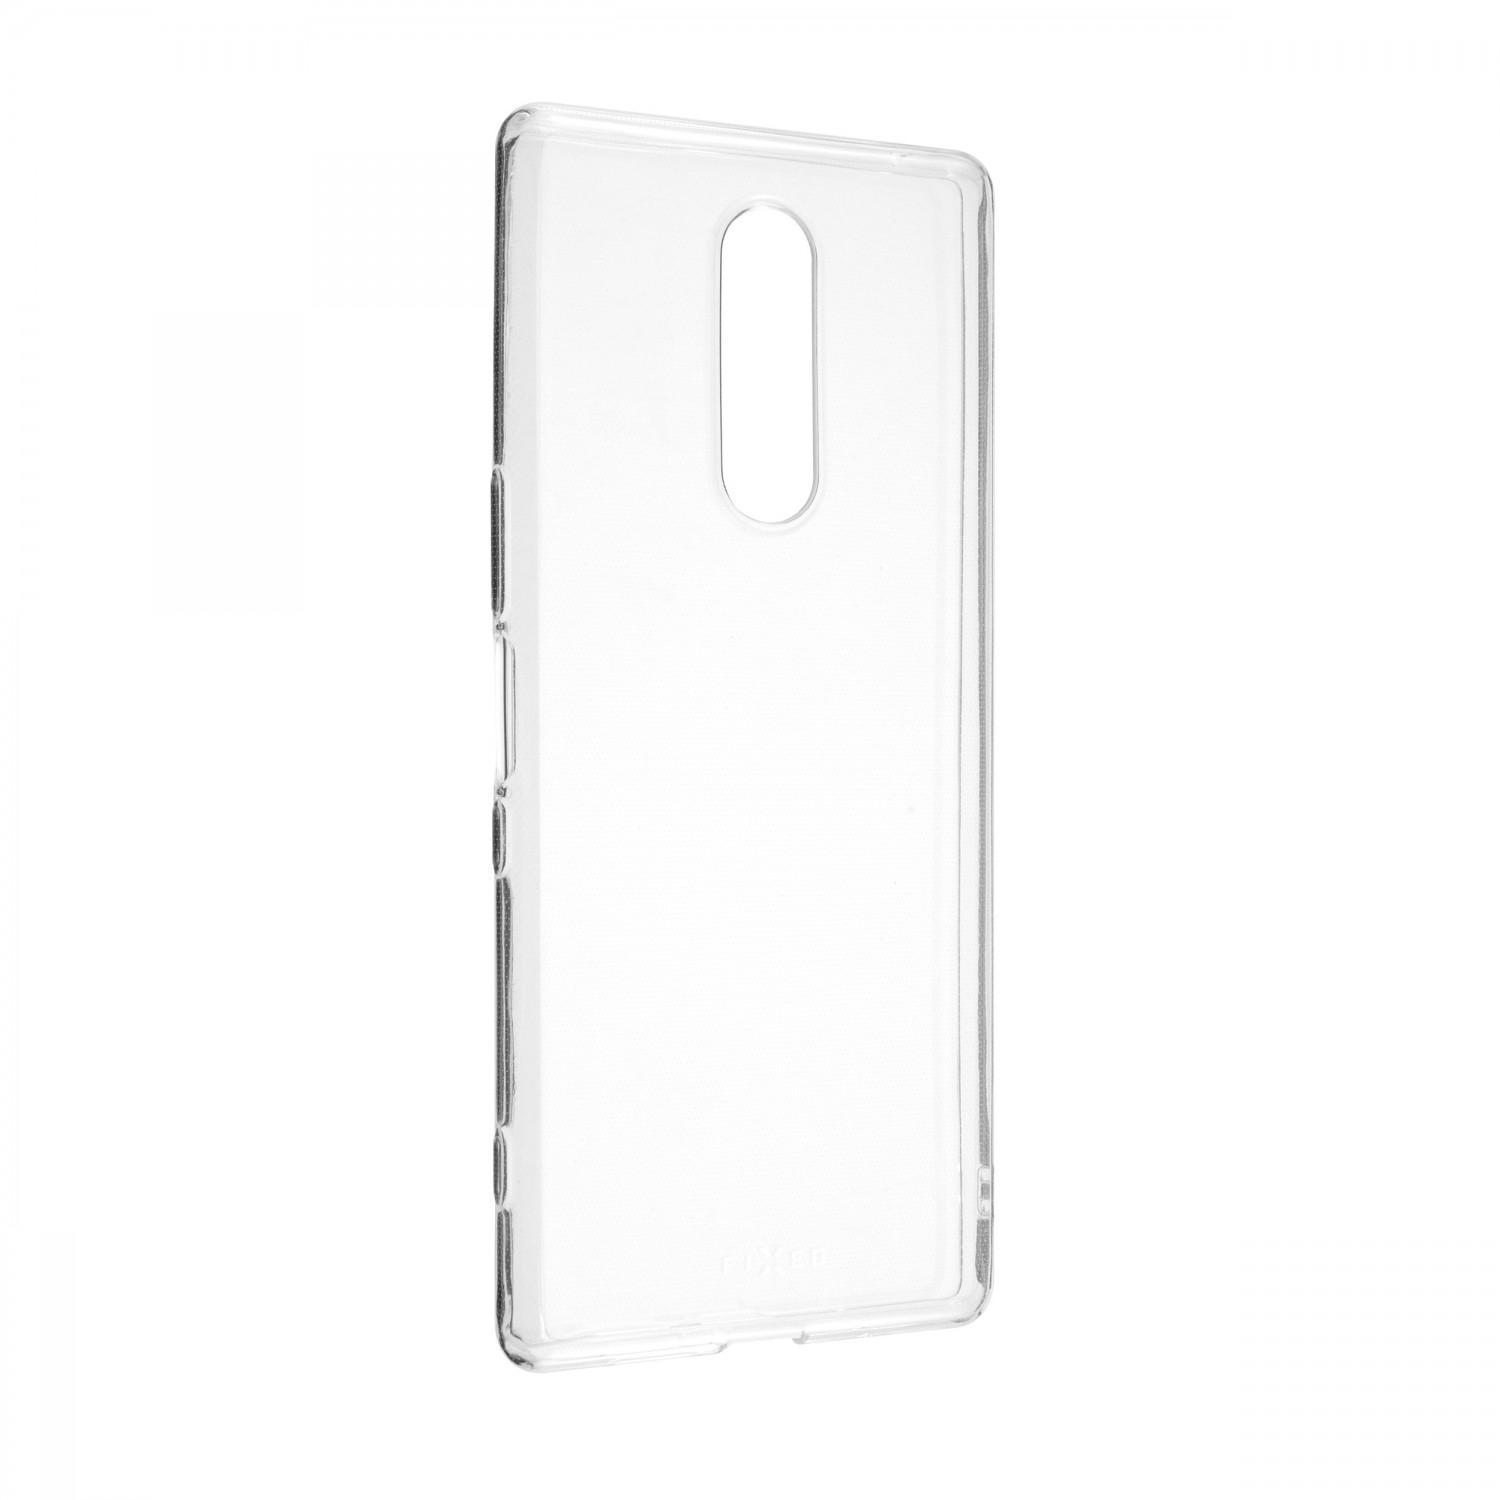 Ultratenké silikonové pouzdro FIXED Skin pro Sony Xperia 1, transparentní